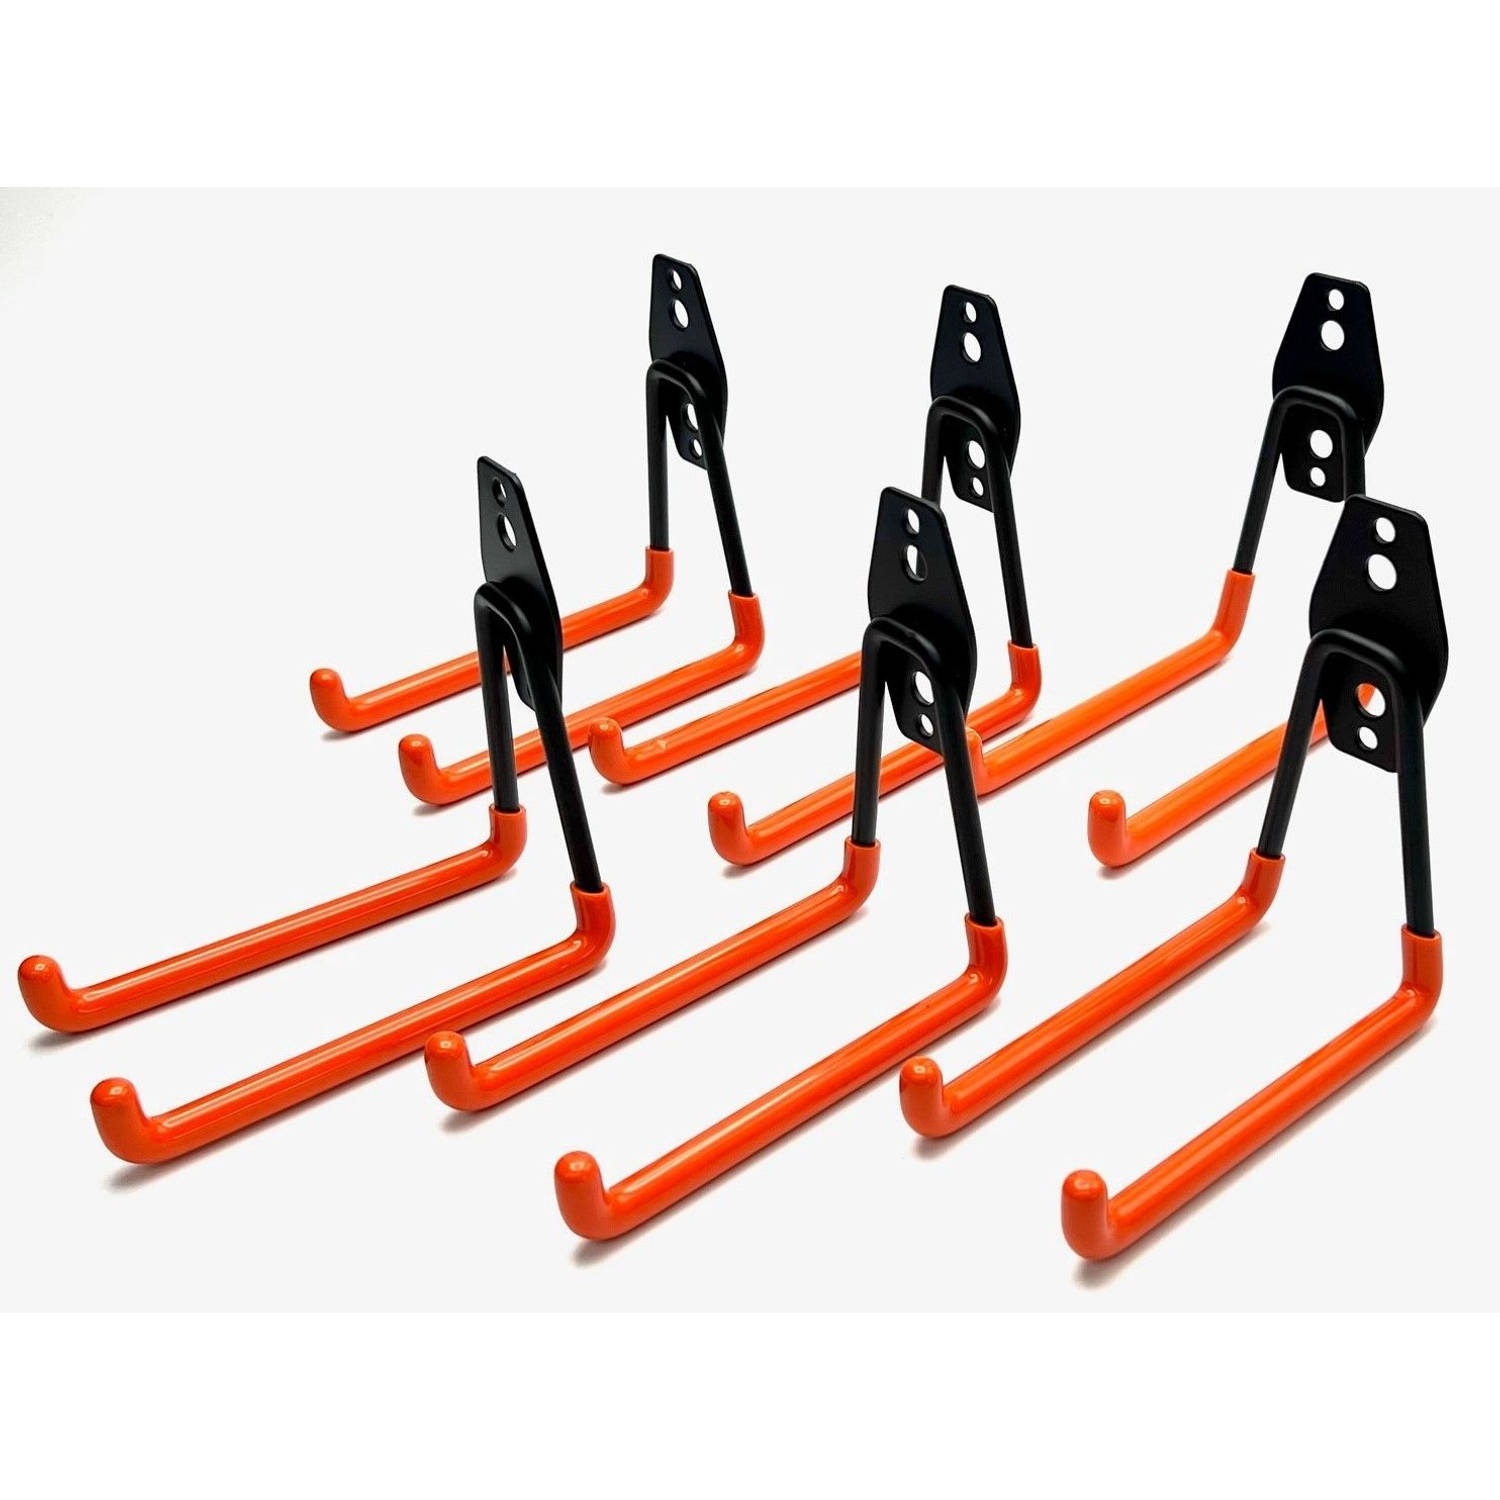 JAP Ophanghaken Extra stevig Incl. schroeven Fiets, ladder, (tuin) gereedschap etc. Set van 6 Oranje